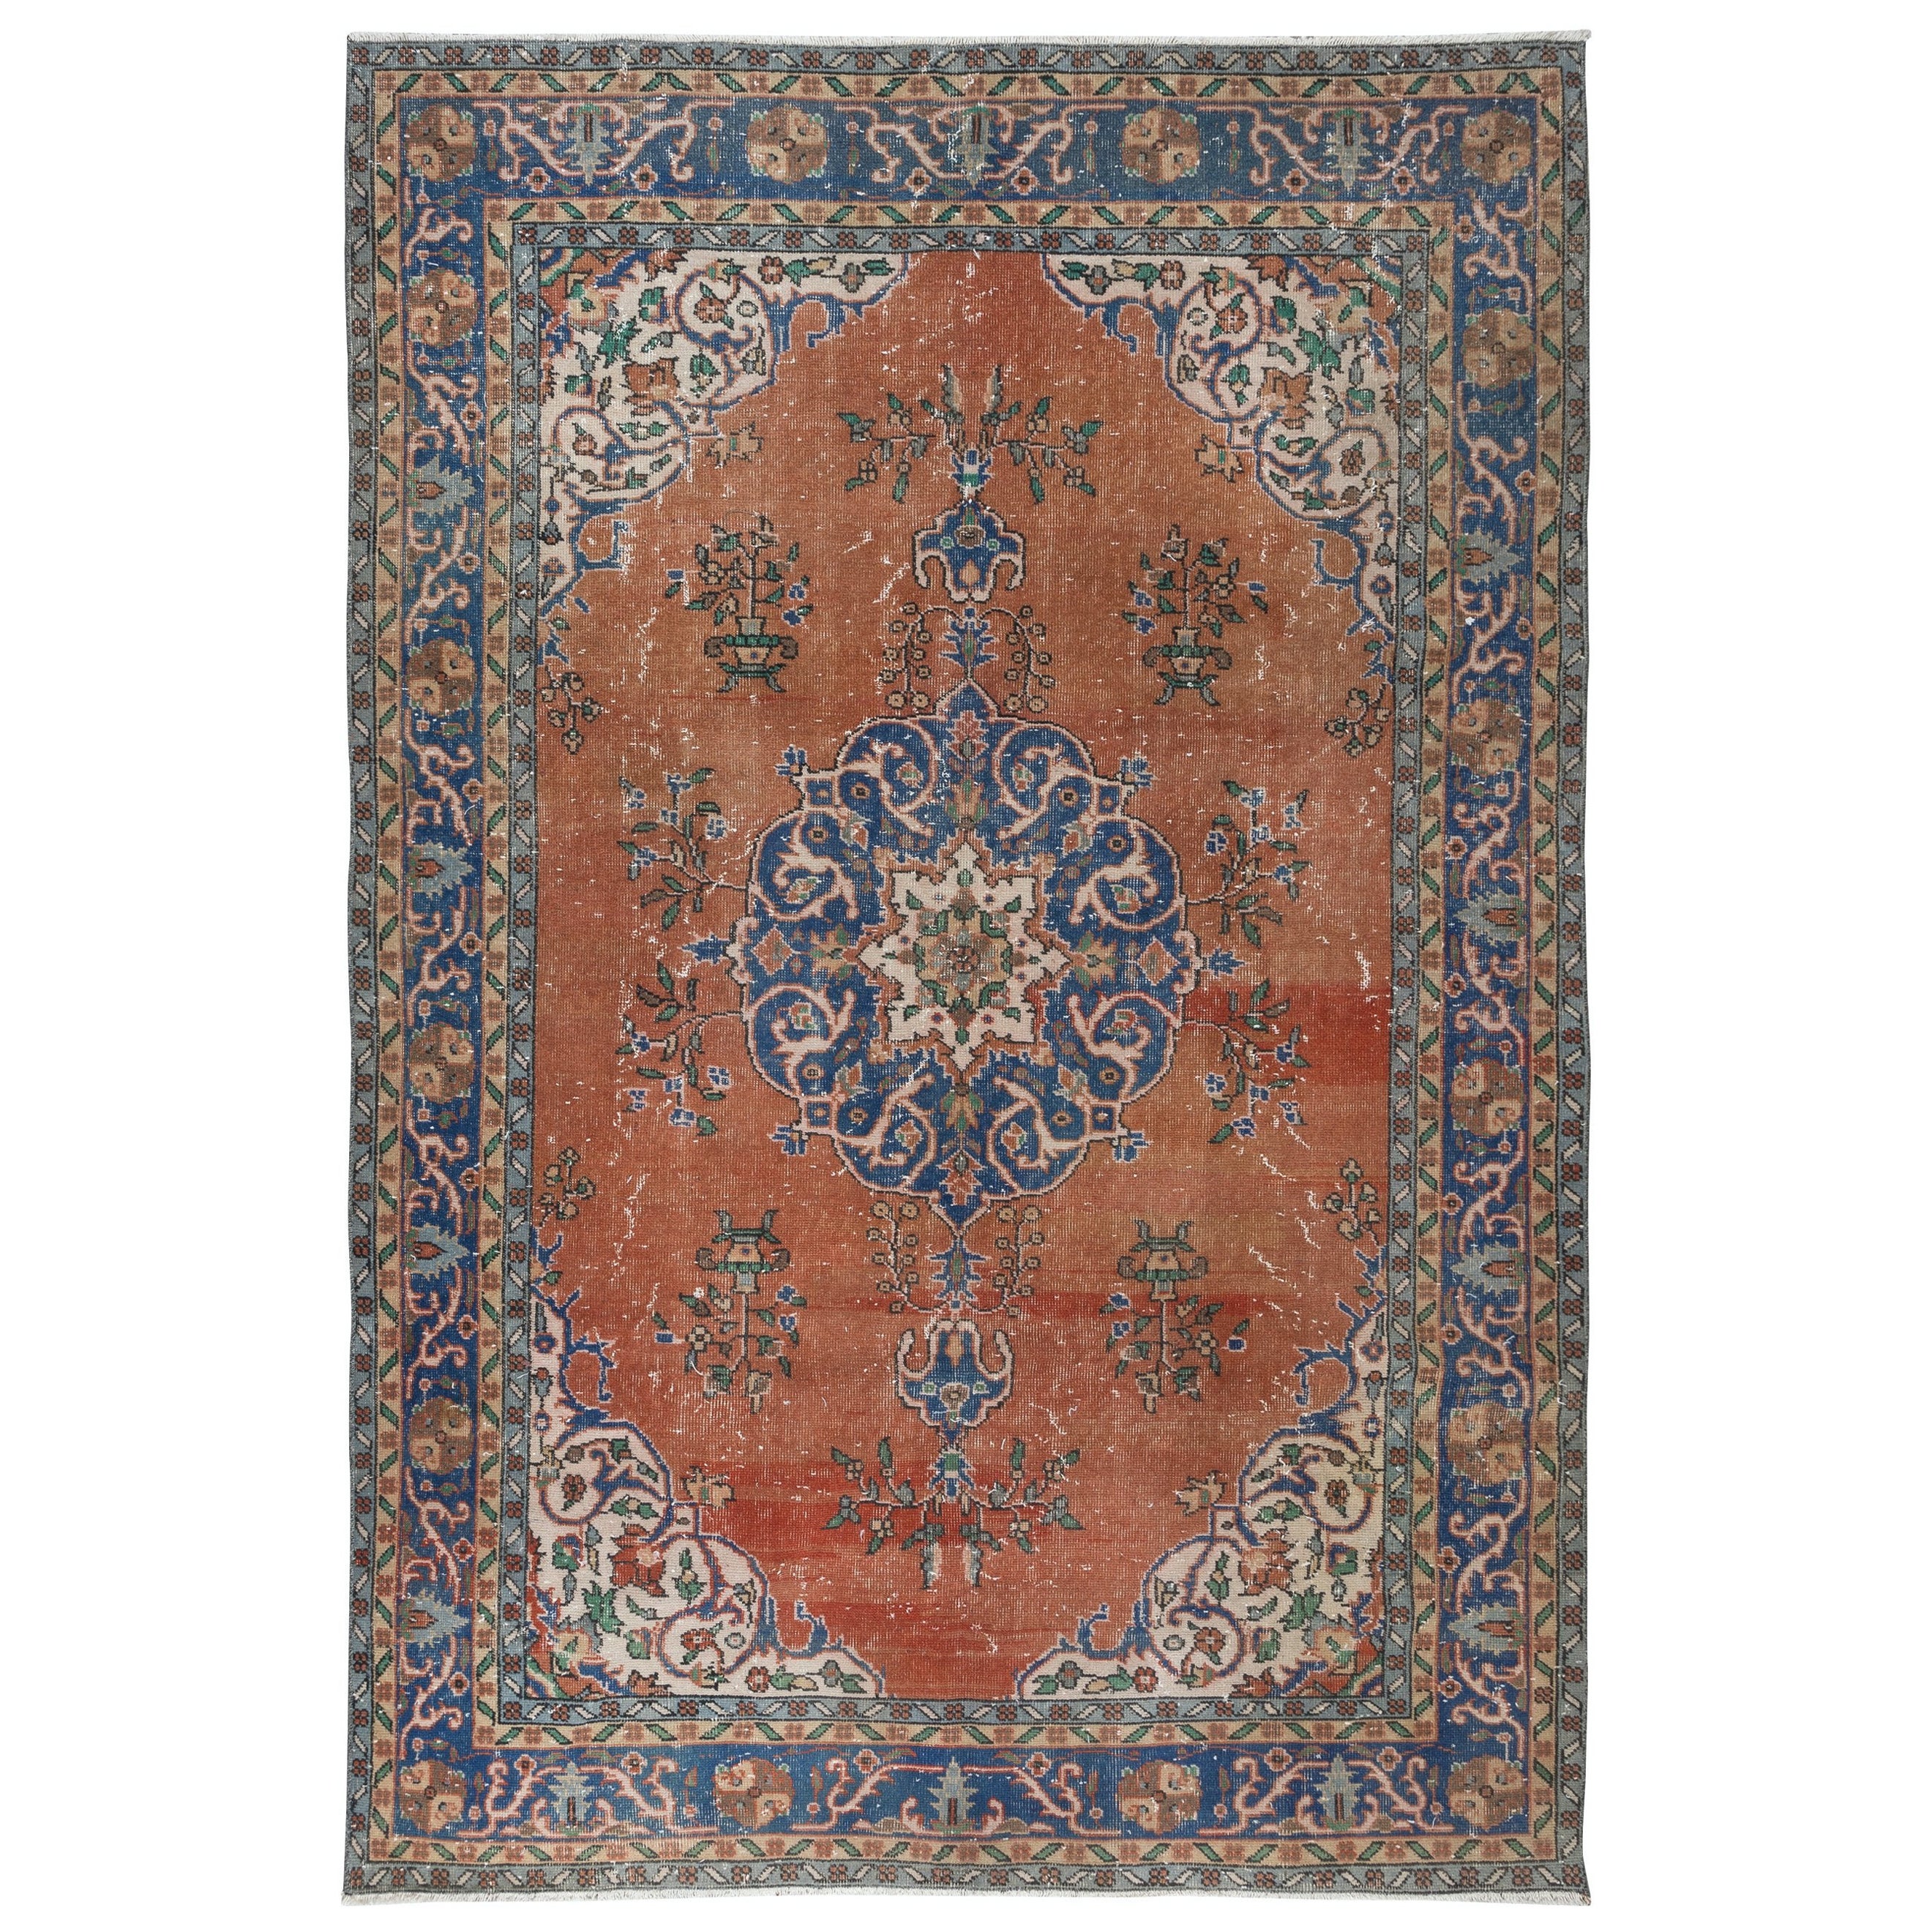 6.4x9.5 Ft Traditioneller Vintage Handgefertigter Türkischer Teppich in Rot & Marineblau